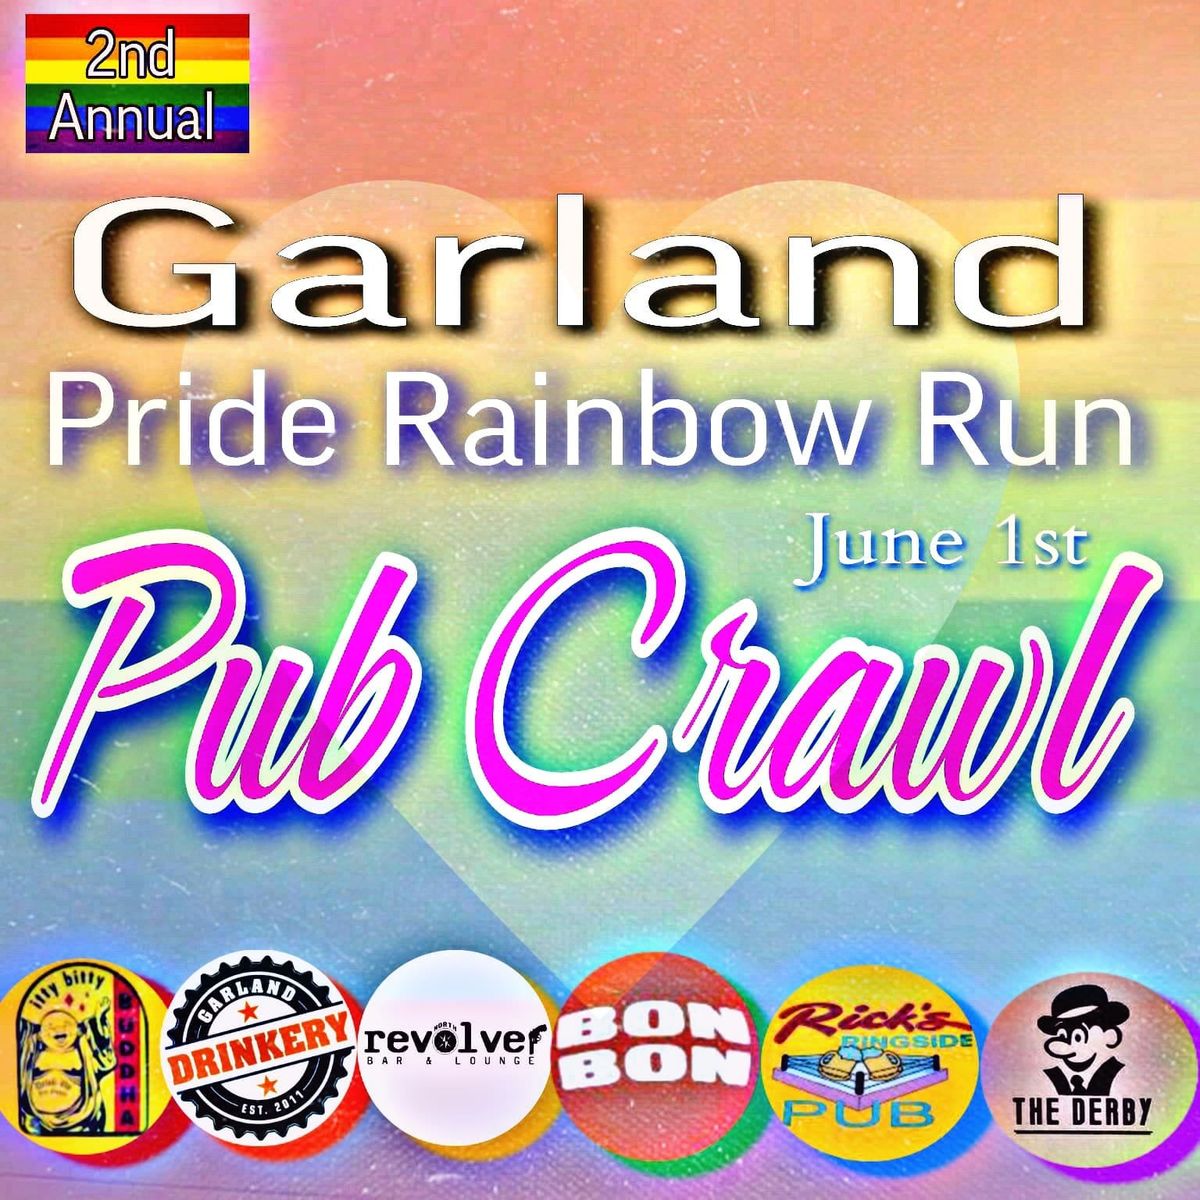 Garland Pride Rainbow Run Pub Crawl 2nd Annual